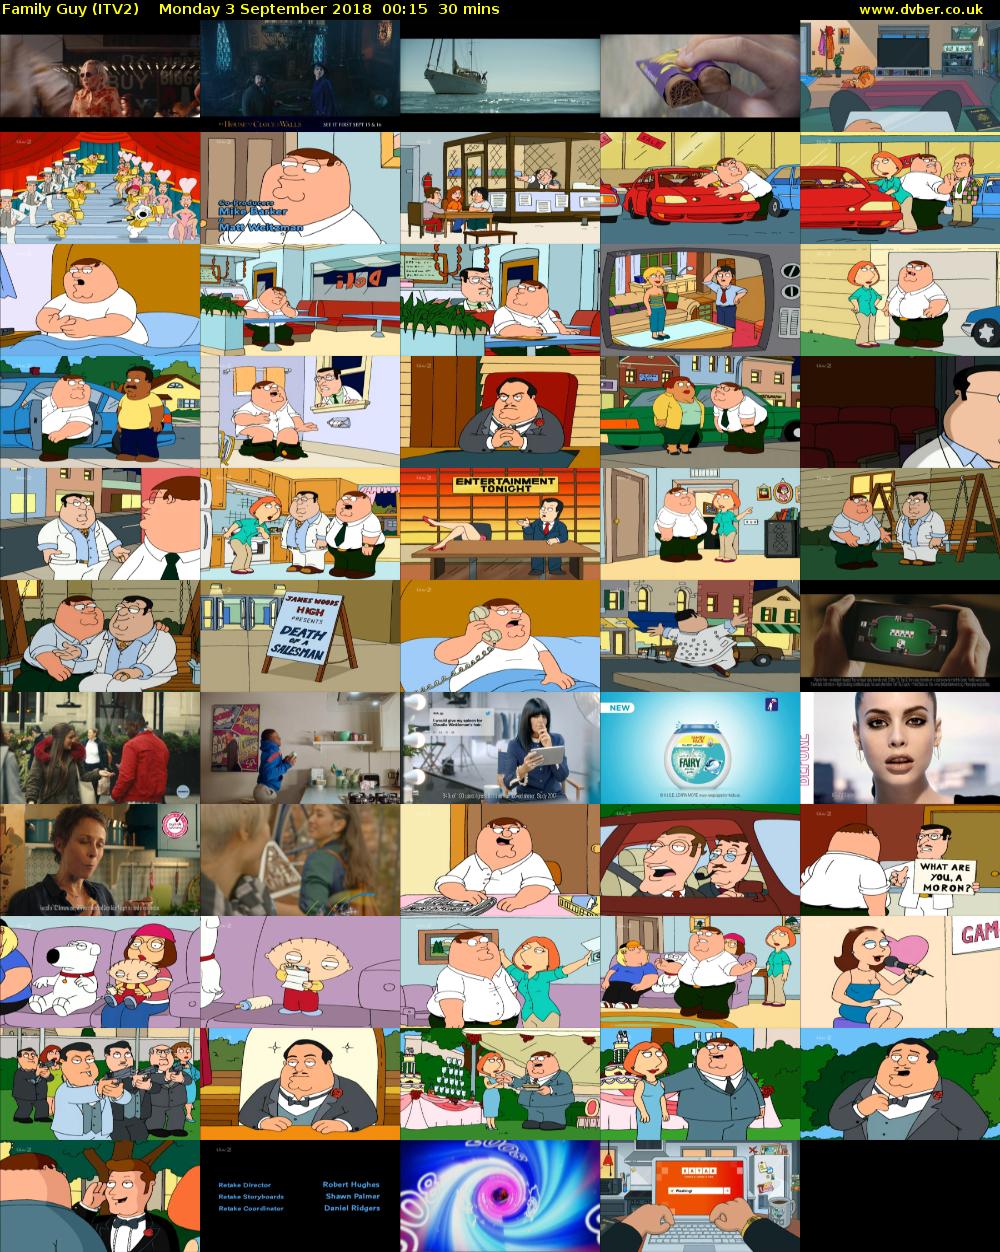 Family Guy (ITV2) Monday 3 September 2018 00:15 - 00:45